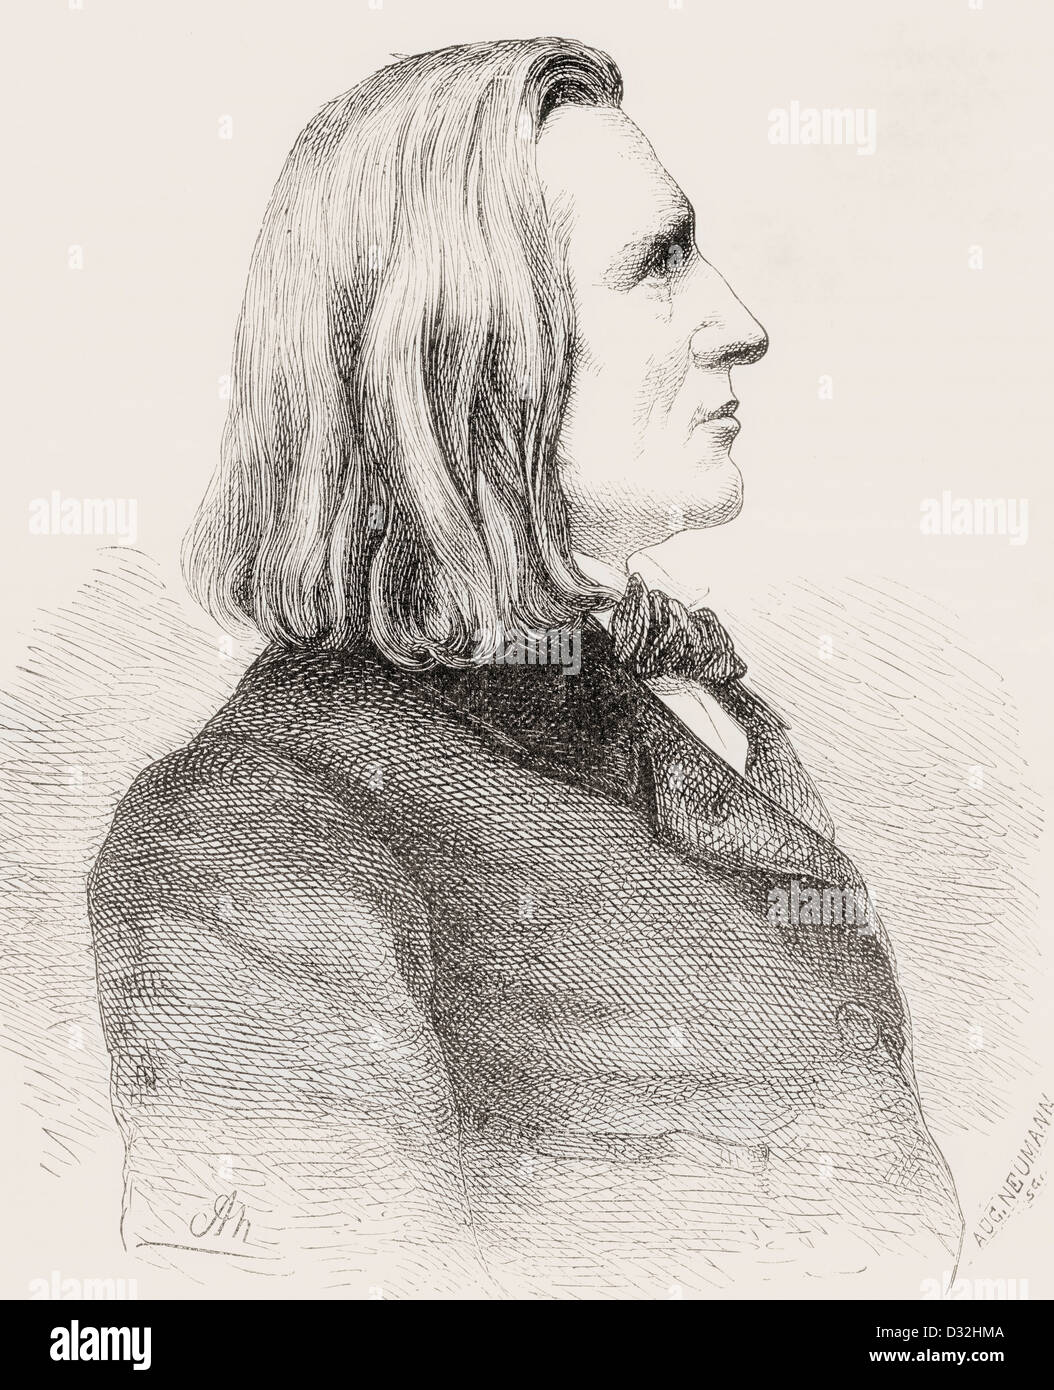 Franz Liszt , alias Franz Ritter von Liszt, 1811 - 1886. 19e siècle le compositeur hongrois, pianiste, chef d'orchestre et enseignant. Banque D'Images